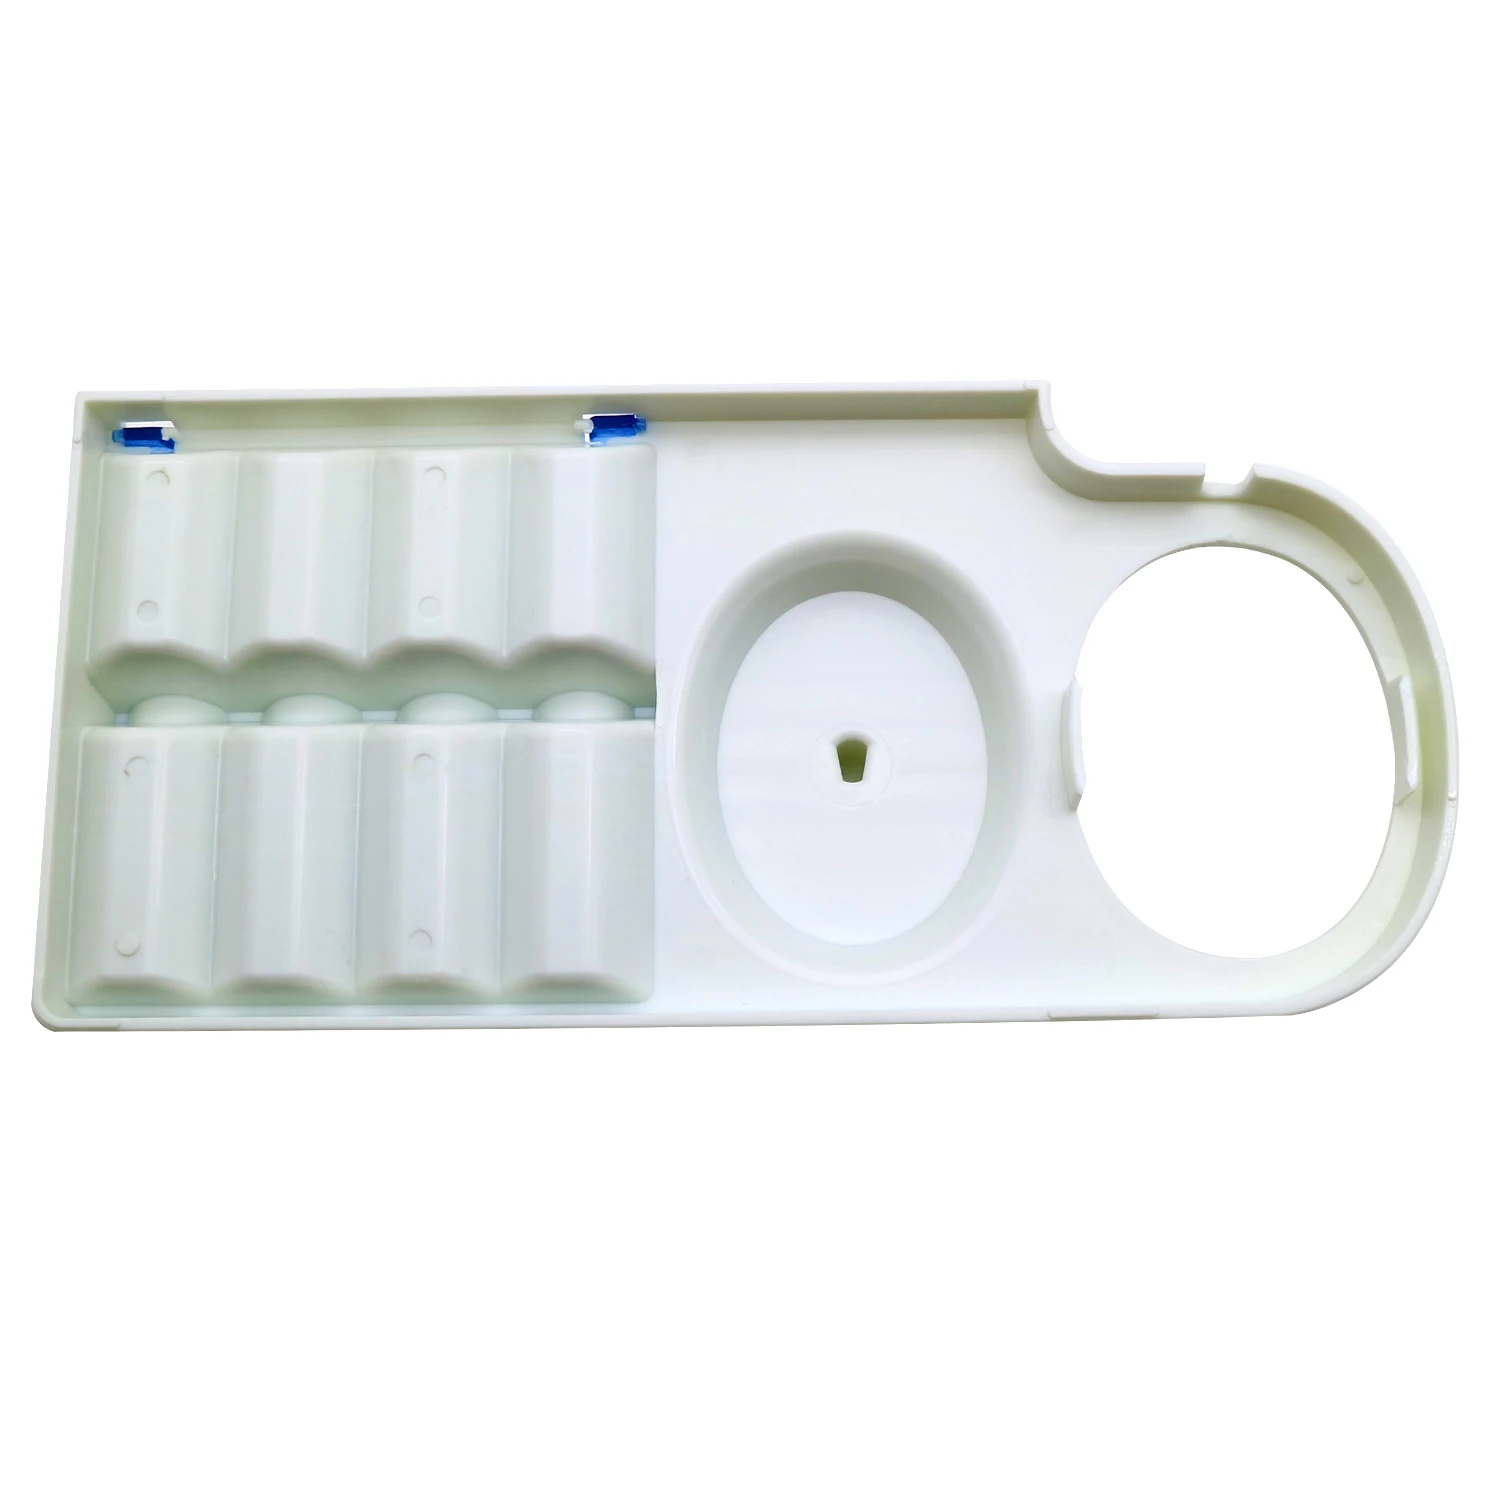 פלסטיק תמיכה מחזיק נייד ראש המברשת על Oral-B מברשת שיניים חשמלית לעמוד D12 די. 18 D29 D34 Pro 1000 600 690 700 D20 D17 - 2